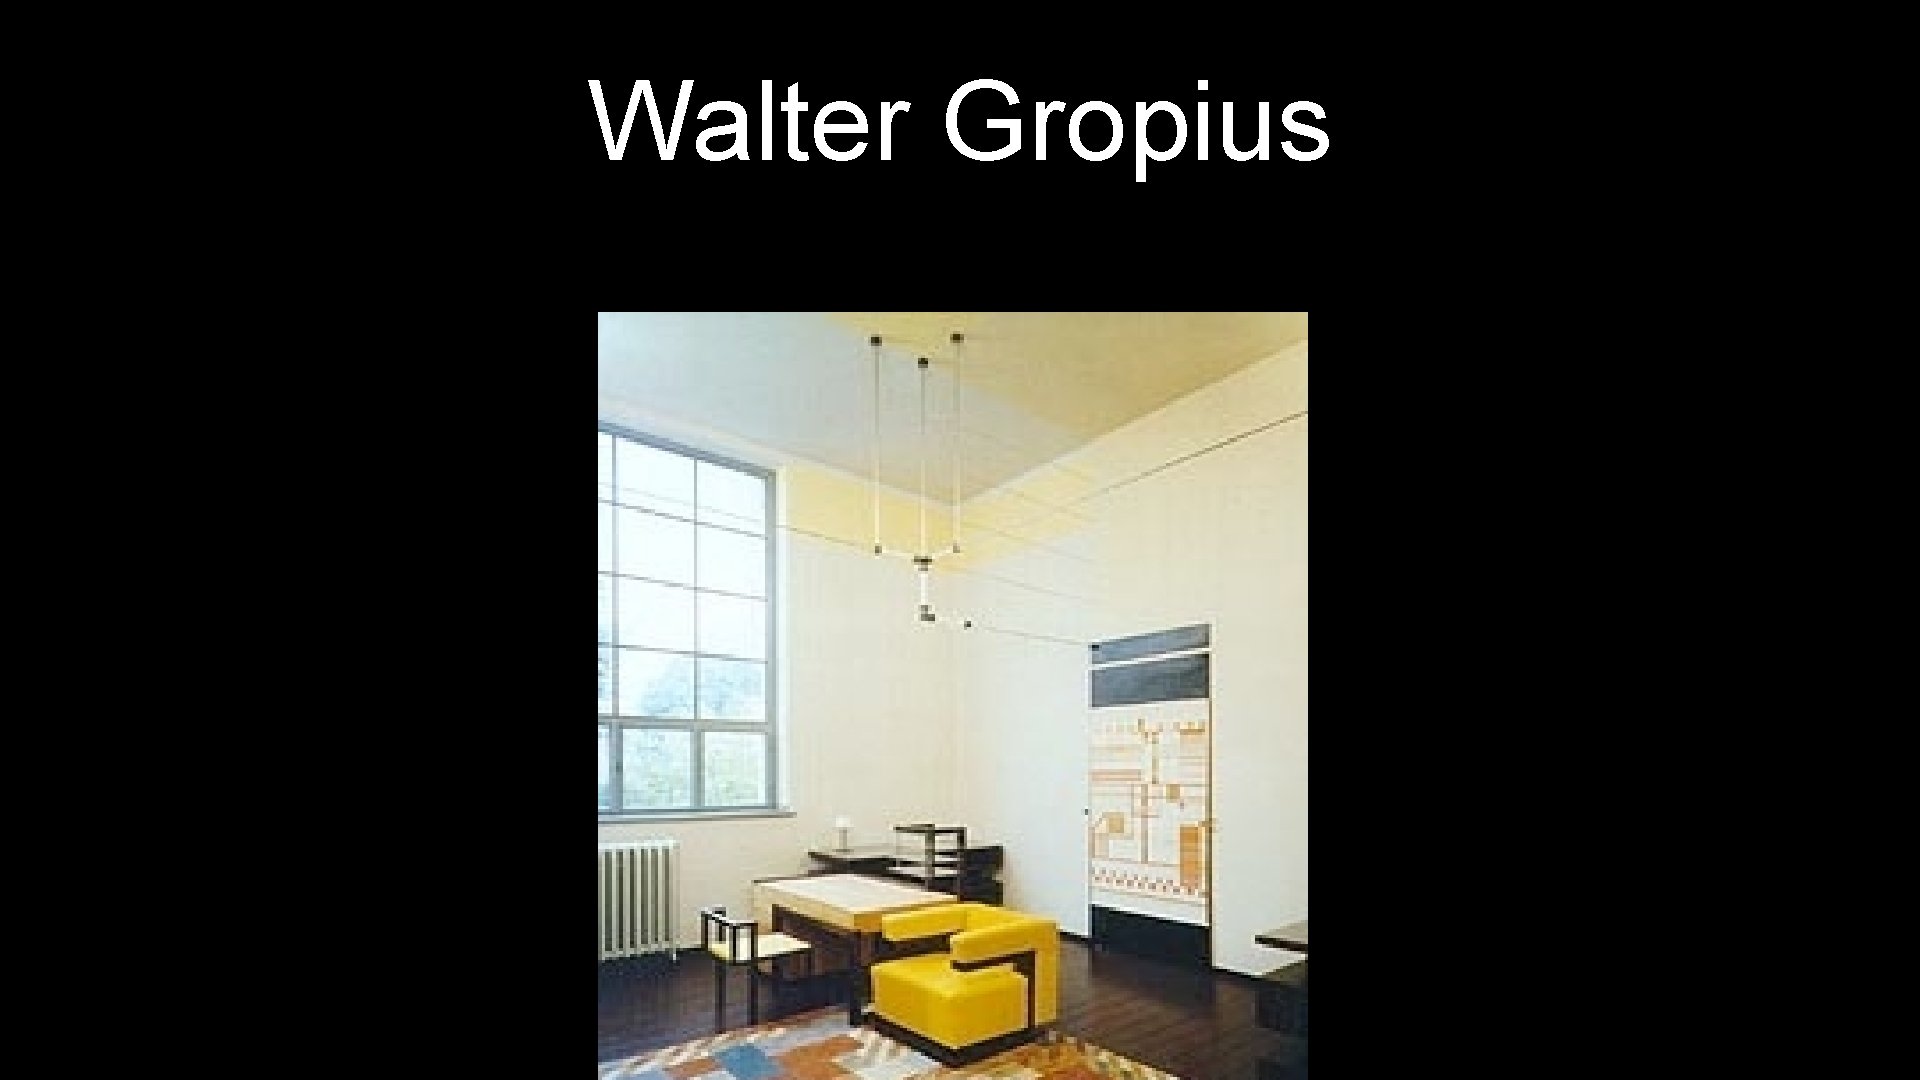 Walter Gropius 